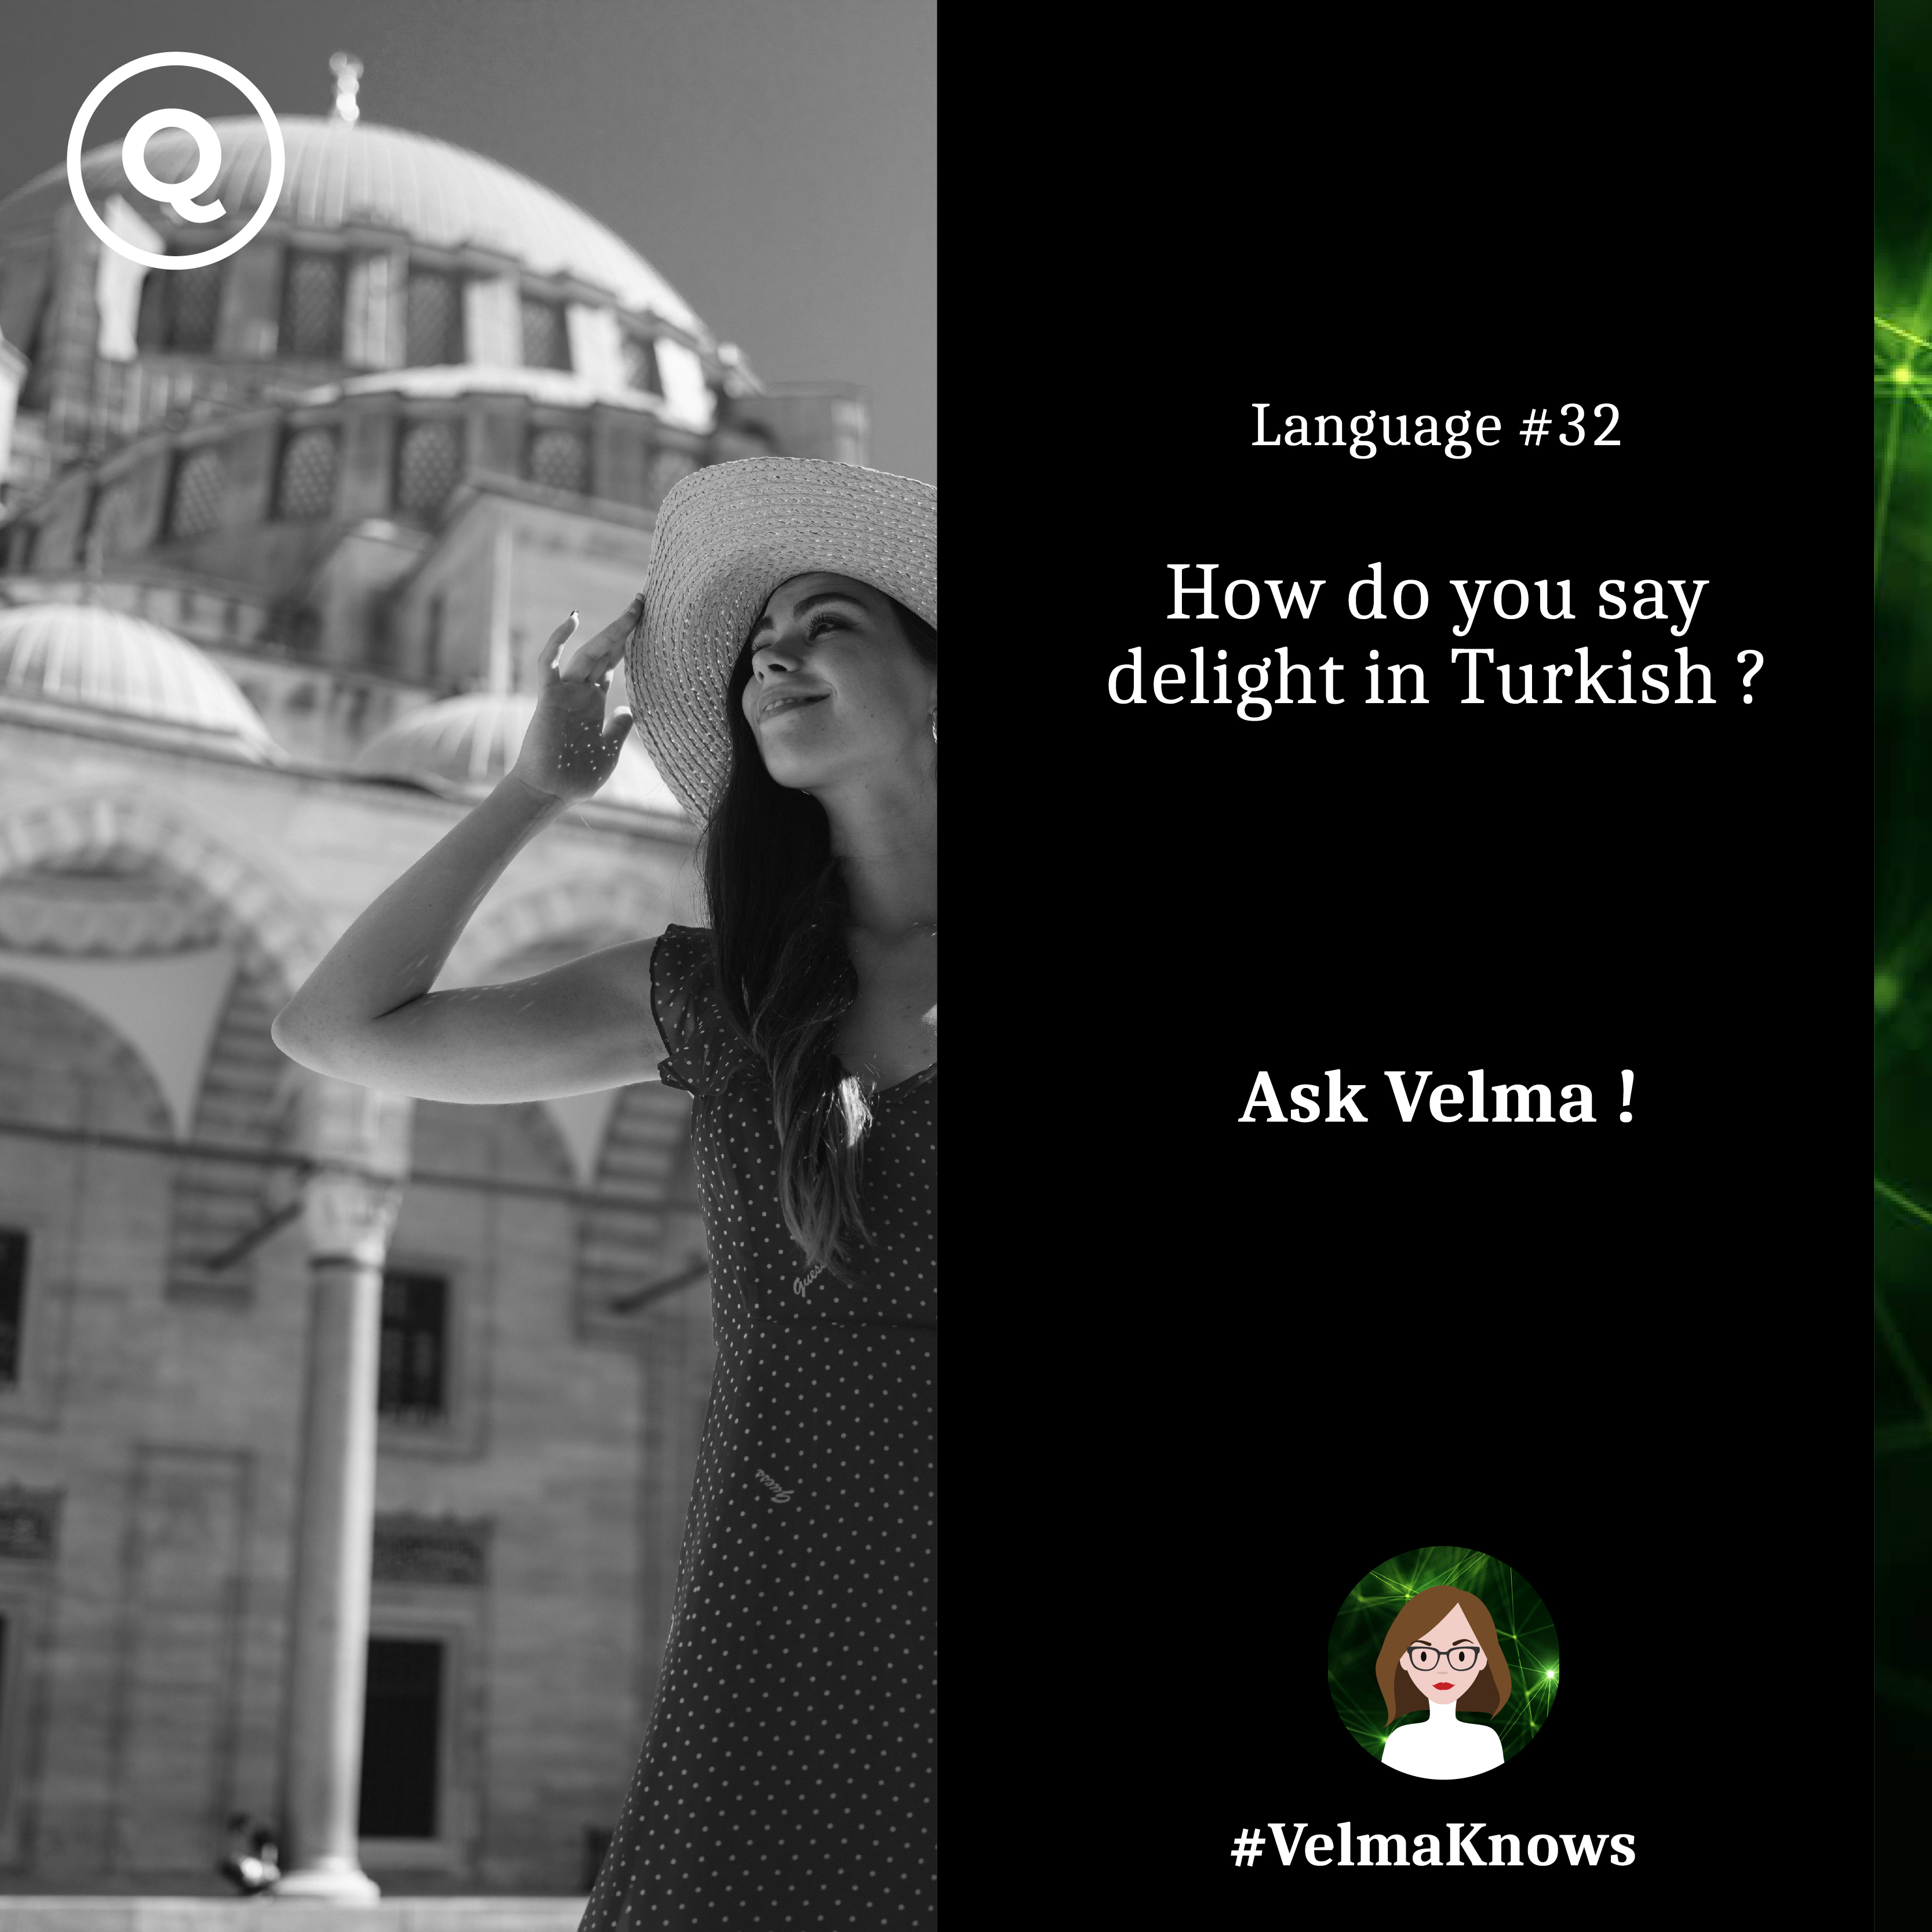  Hotel chatbot speaks Turkish